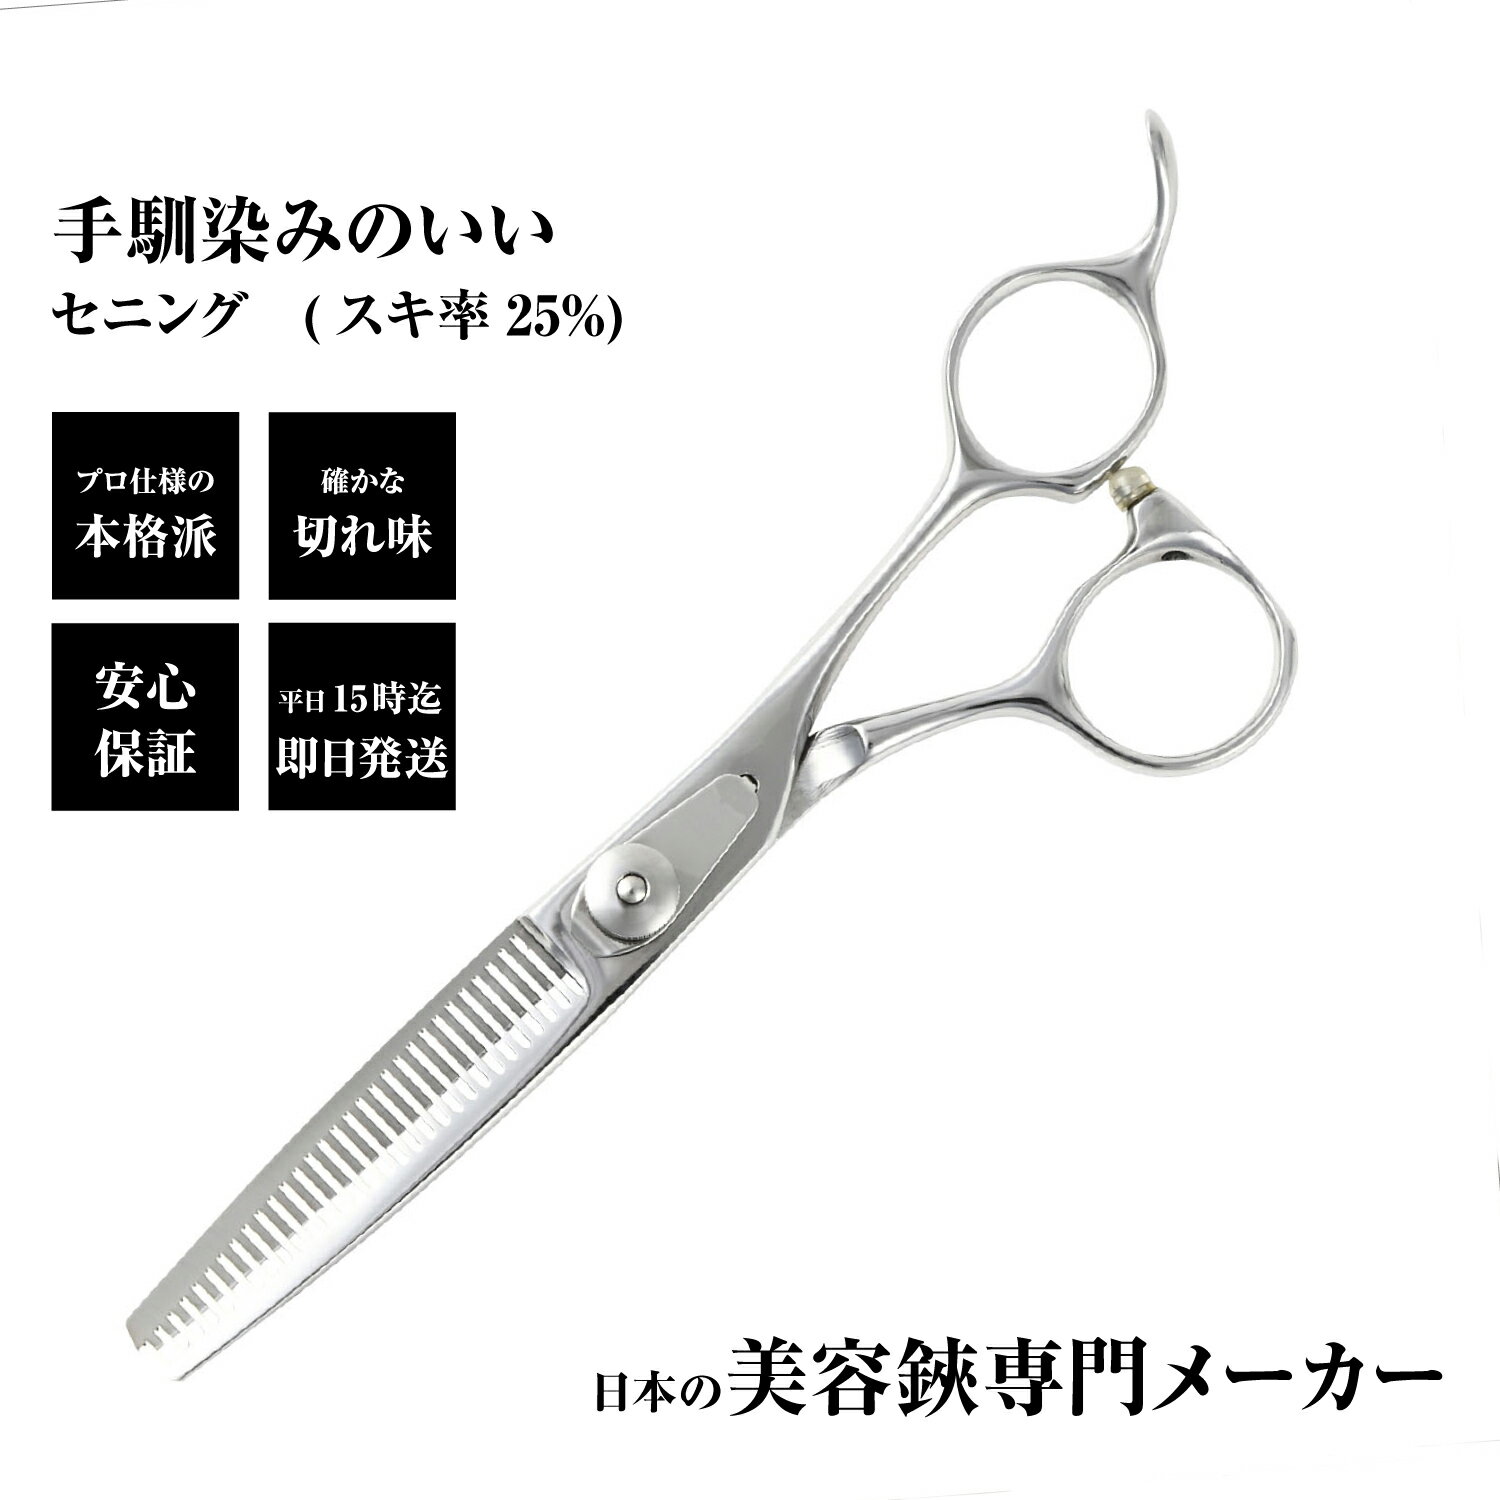 【メール便送料無料】日本の鋏専門メーカー 鍛造仕上 / DEEDS CP-01 セニング 単品/ 美容師 理容 理容師 散髪 すきば…